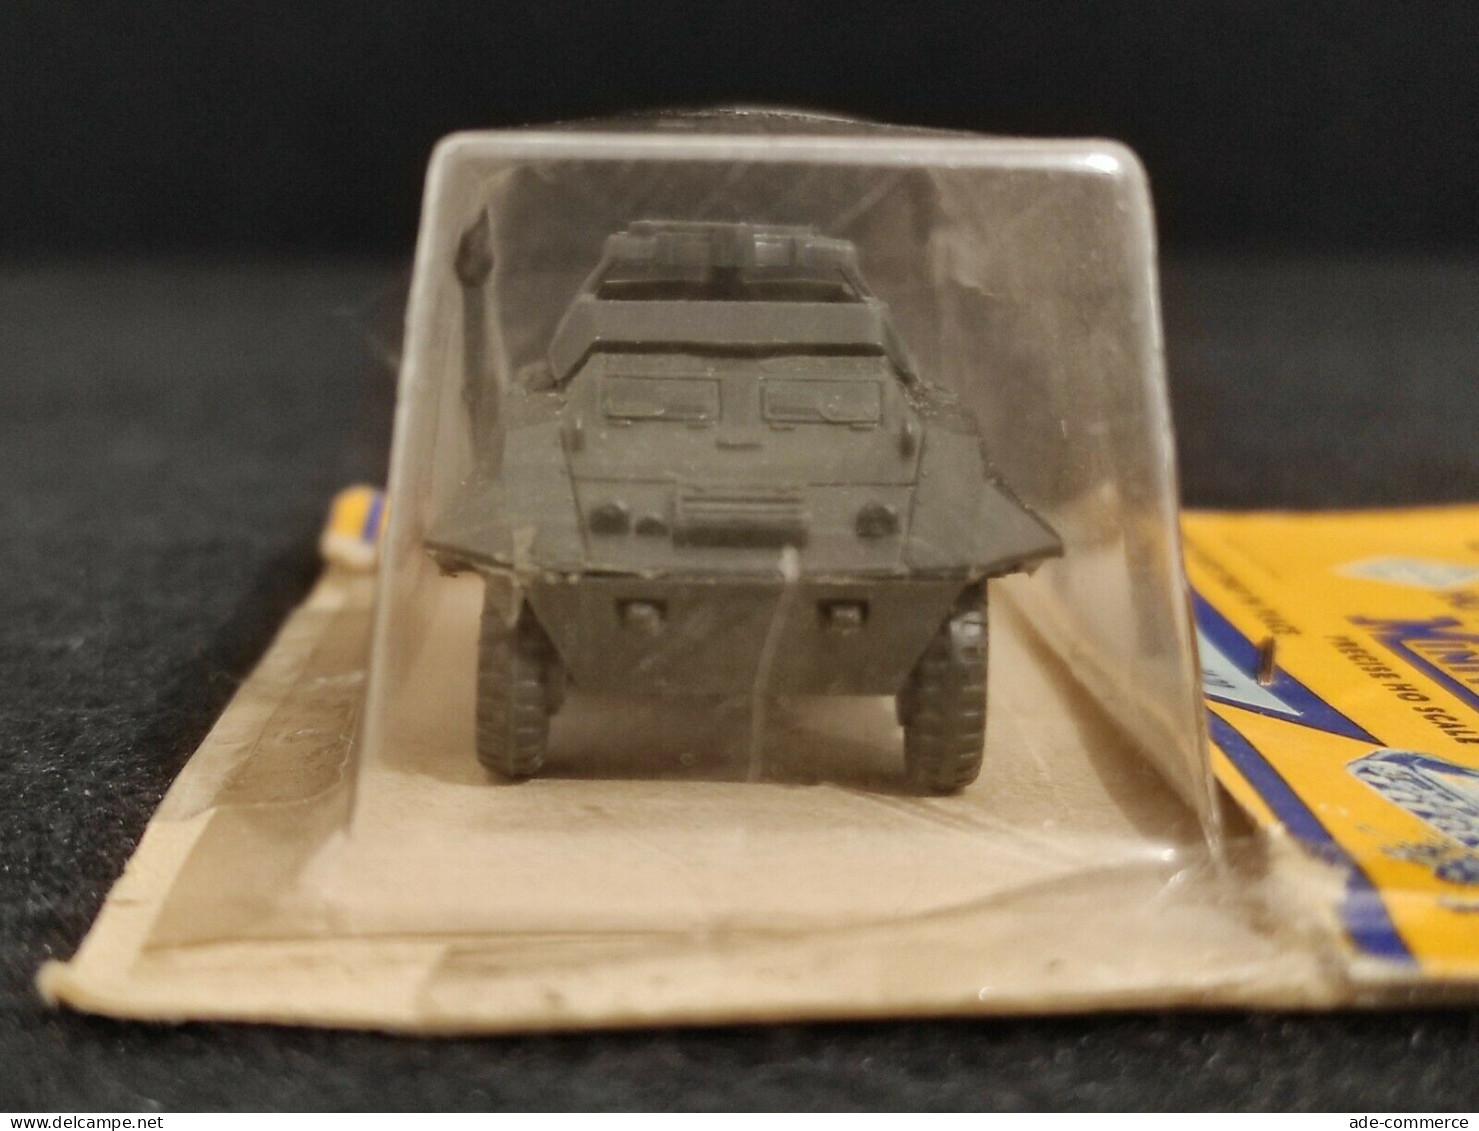 Roco Model Miniatures MiniTanks - 204 - US Commandcar M20 - Modellino Militare - Sonstige & Ohne Zuordnung